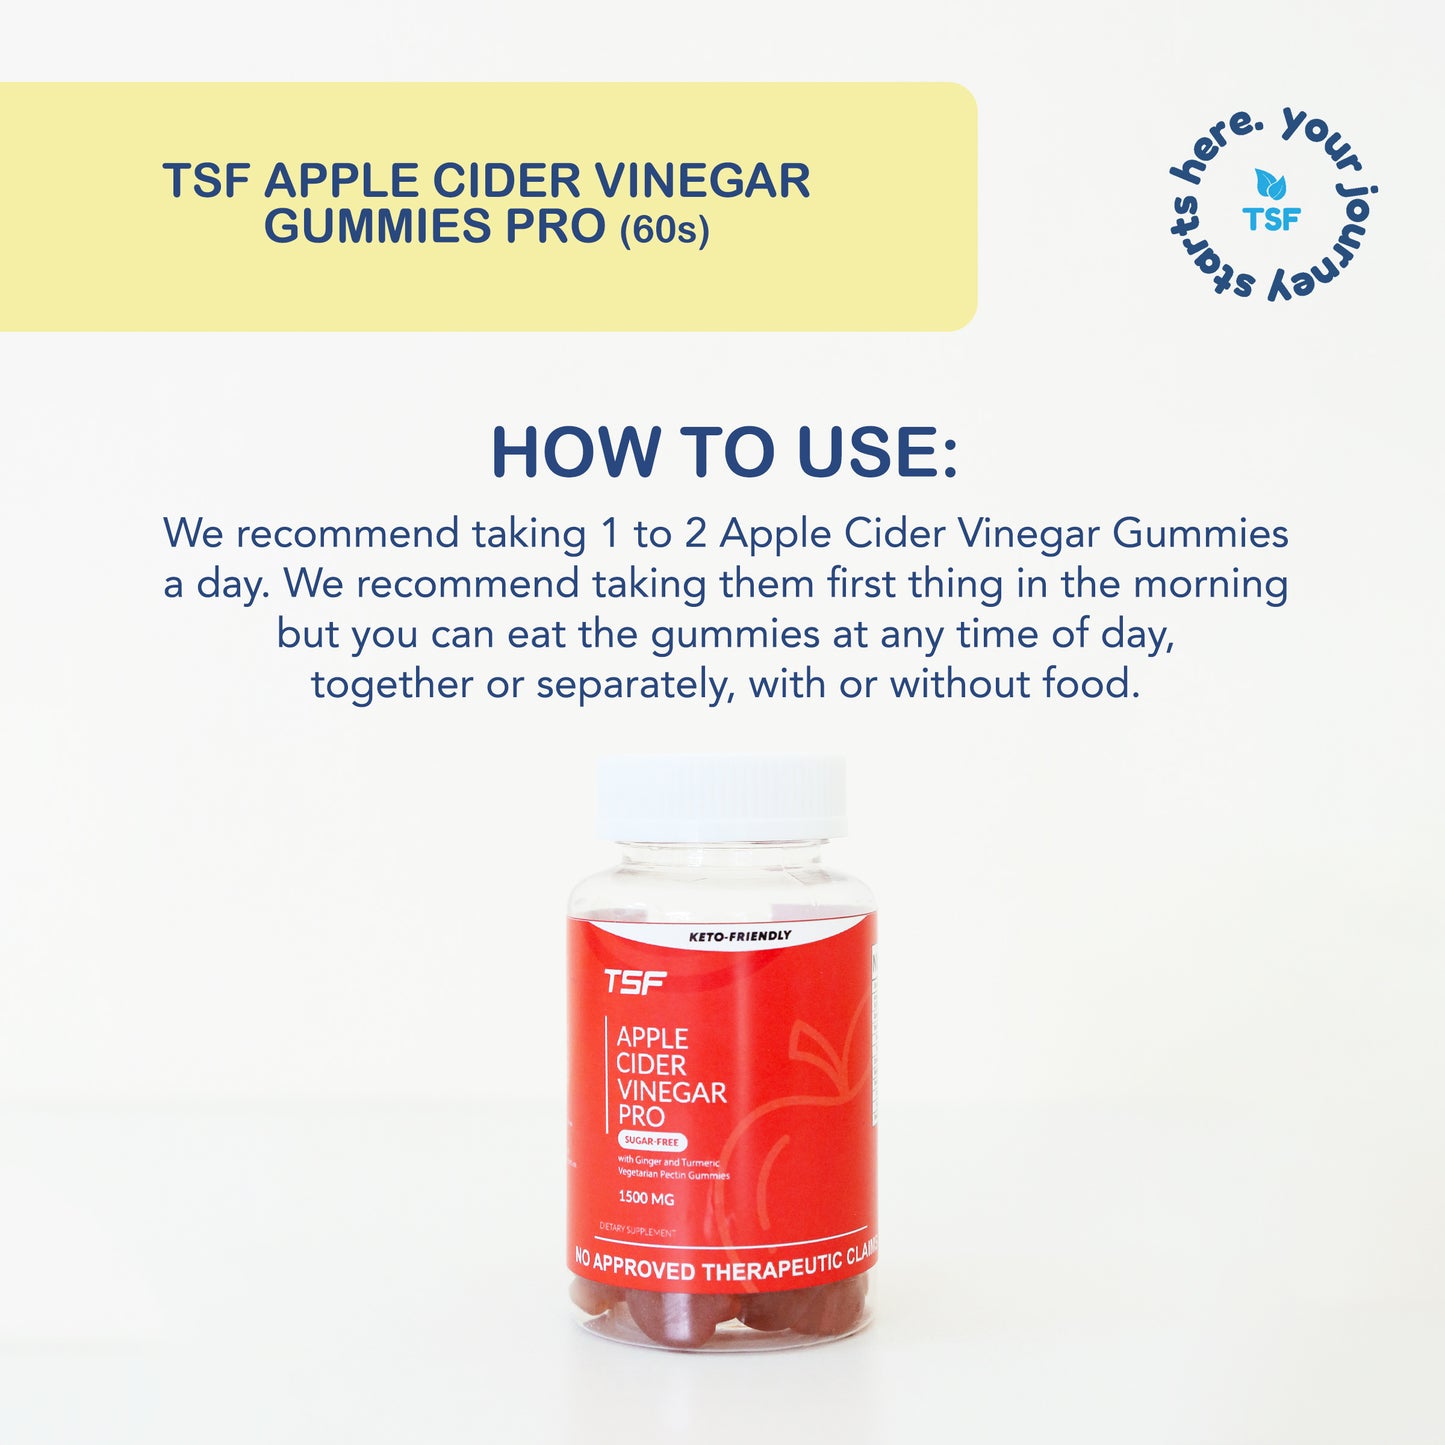 Apple Cider Vinegar PRO Gummies 1500mg 60s (Keto-Friendly and Sugar-Free)